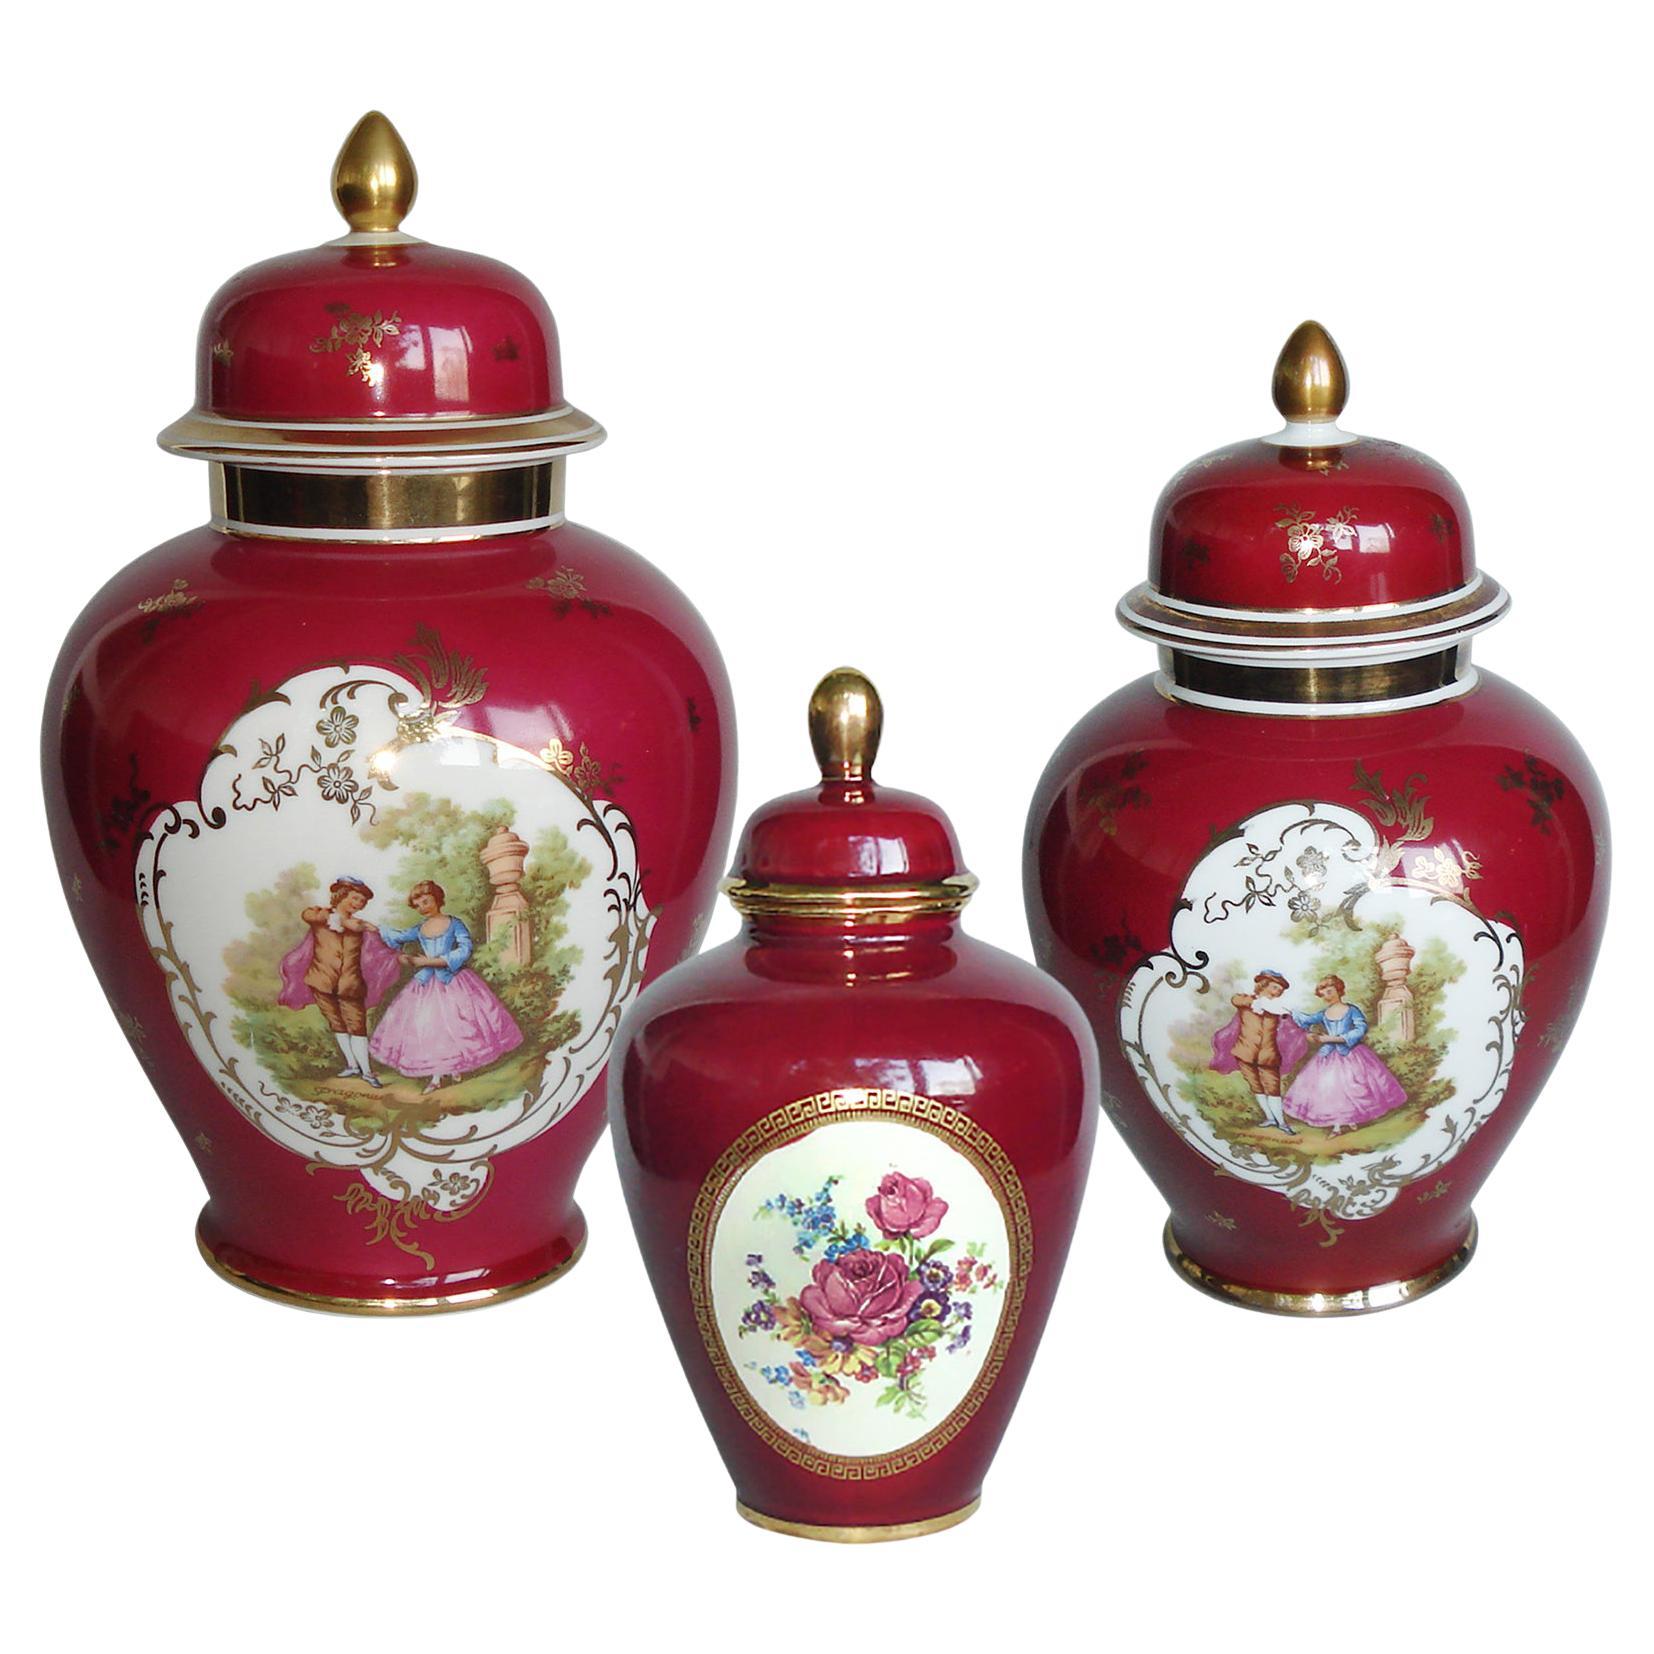 Ensemble de trois urnes en porcelaine avec couvercle, peintes à la main avec des scènes de ragonard